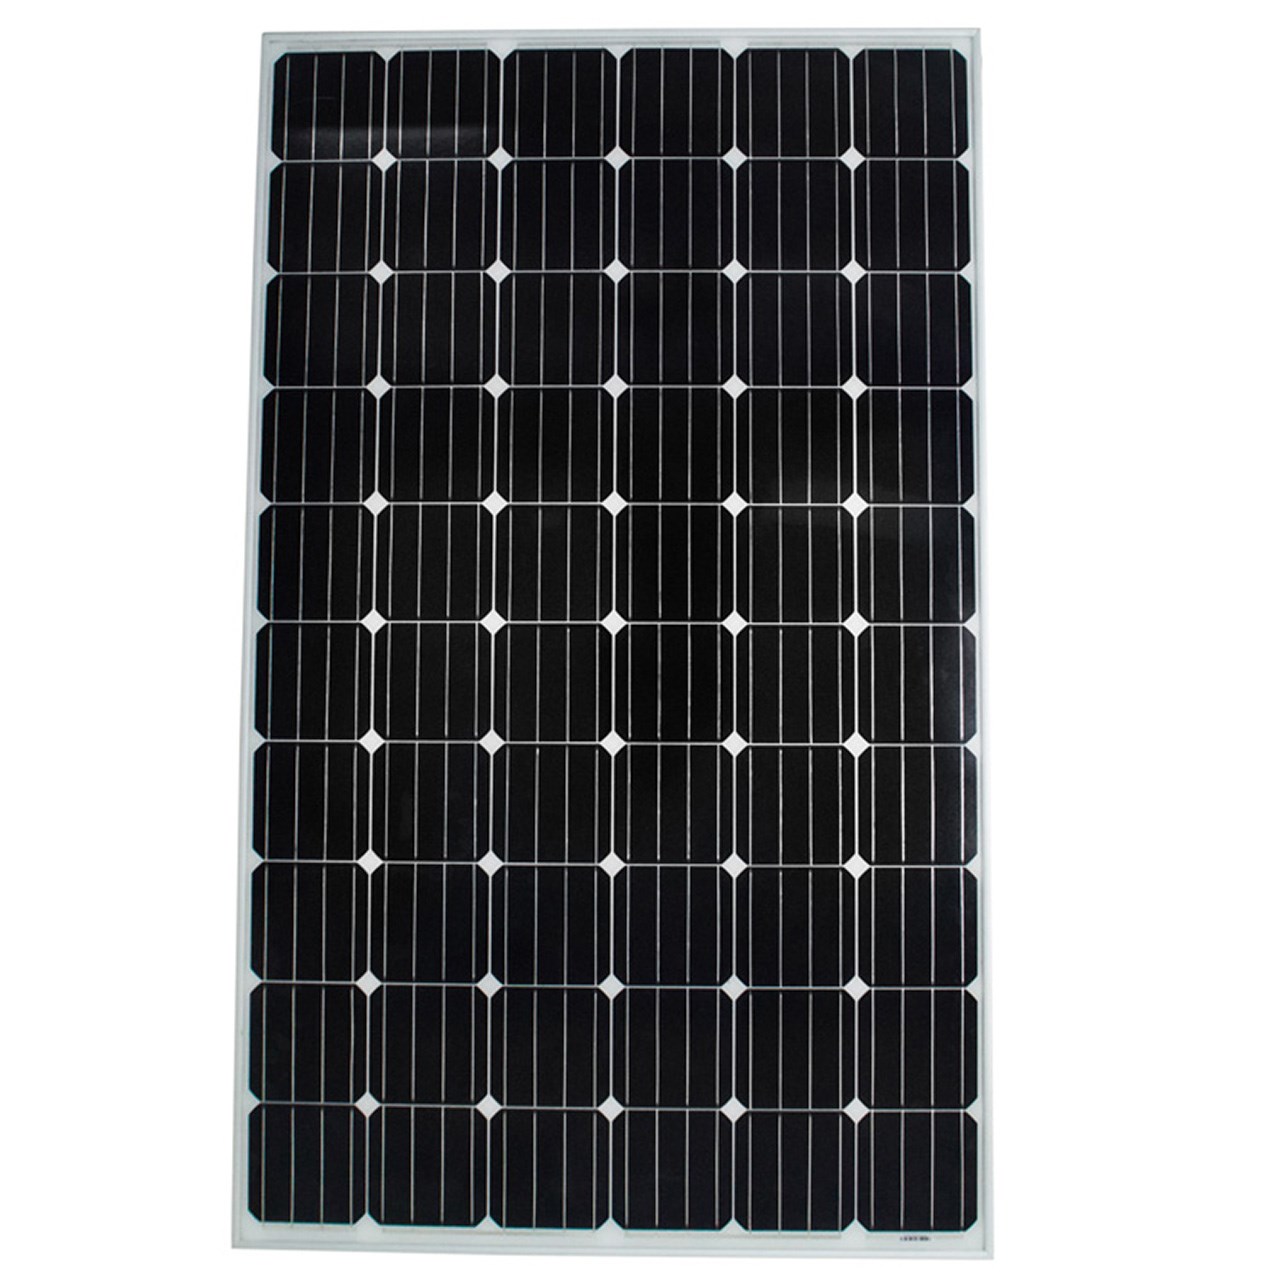 پنل خورشیدی واگان مدل 8714 مونوکریستال 275 وات